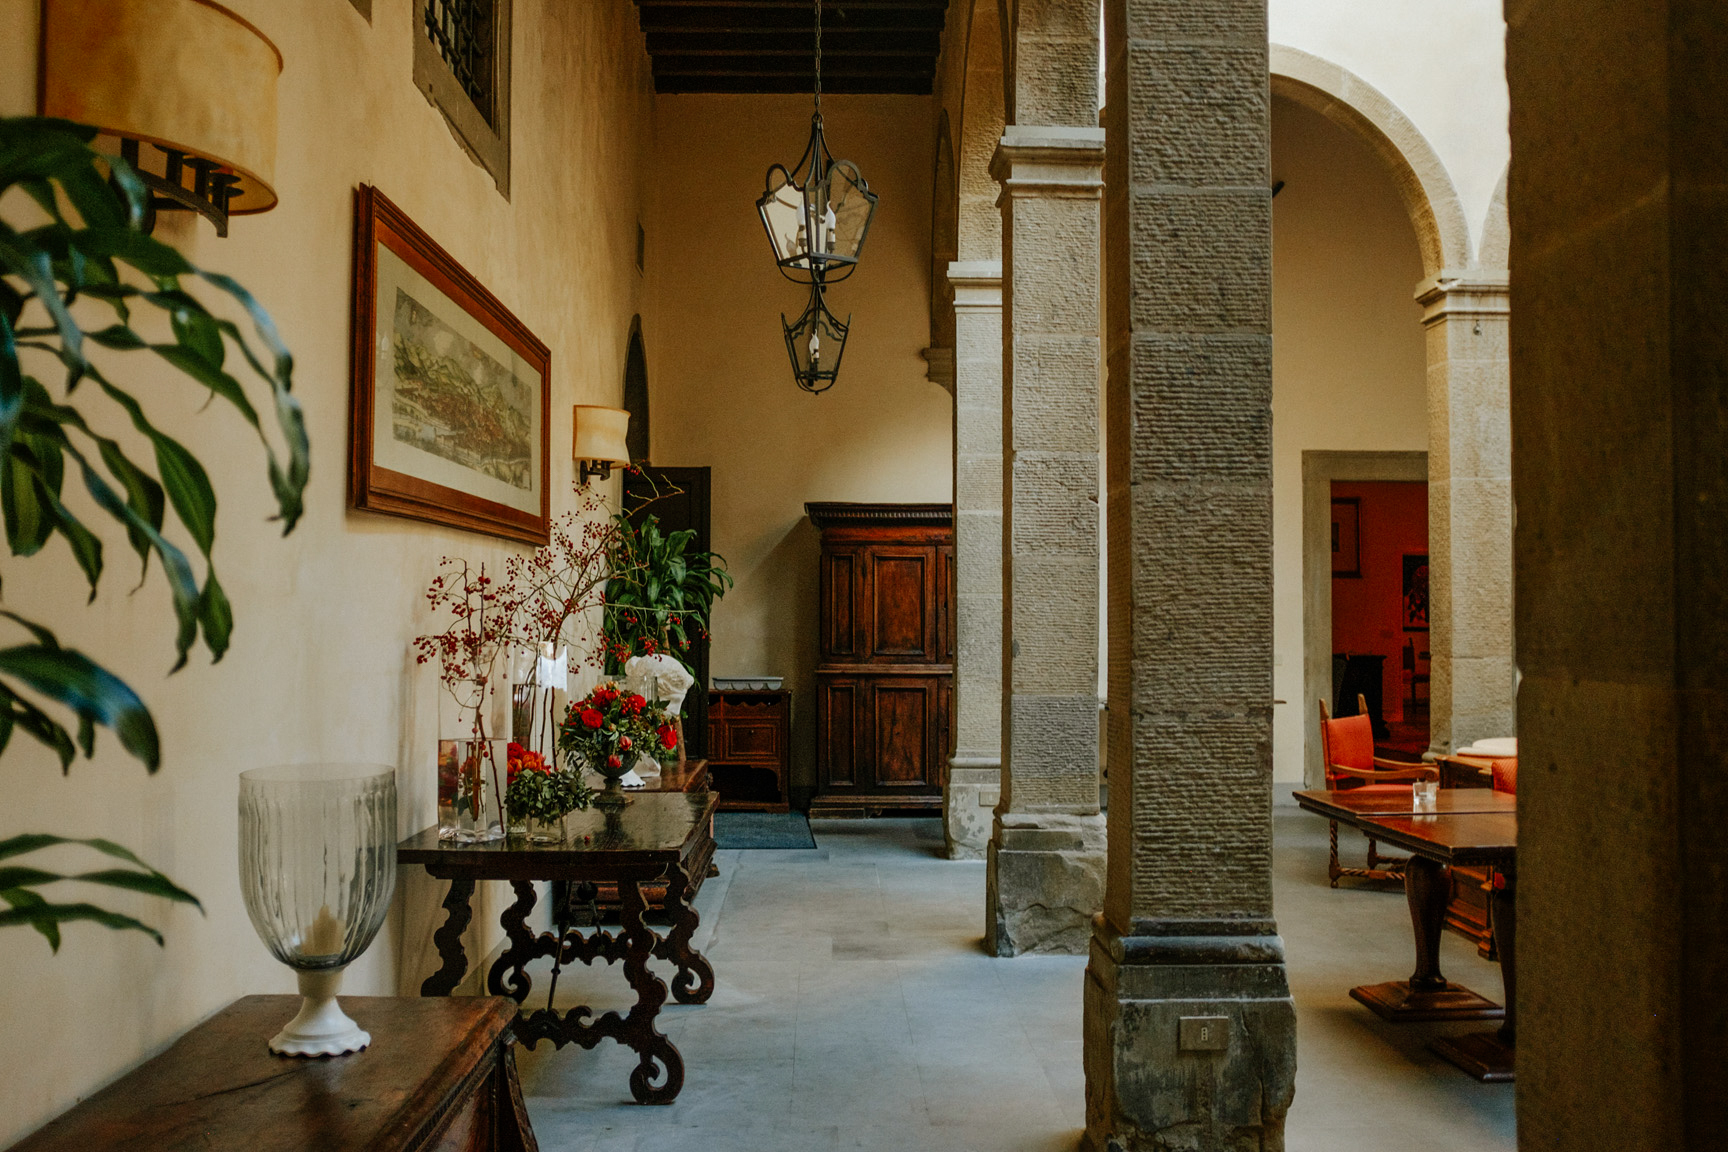   Villa San Michele, Florence  